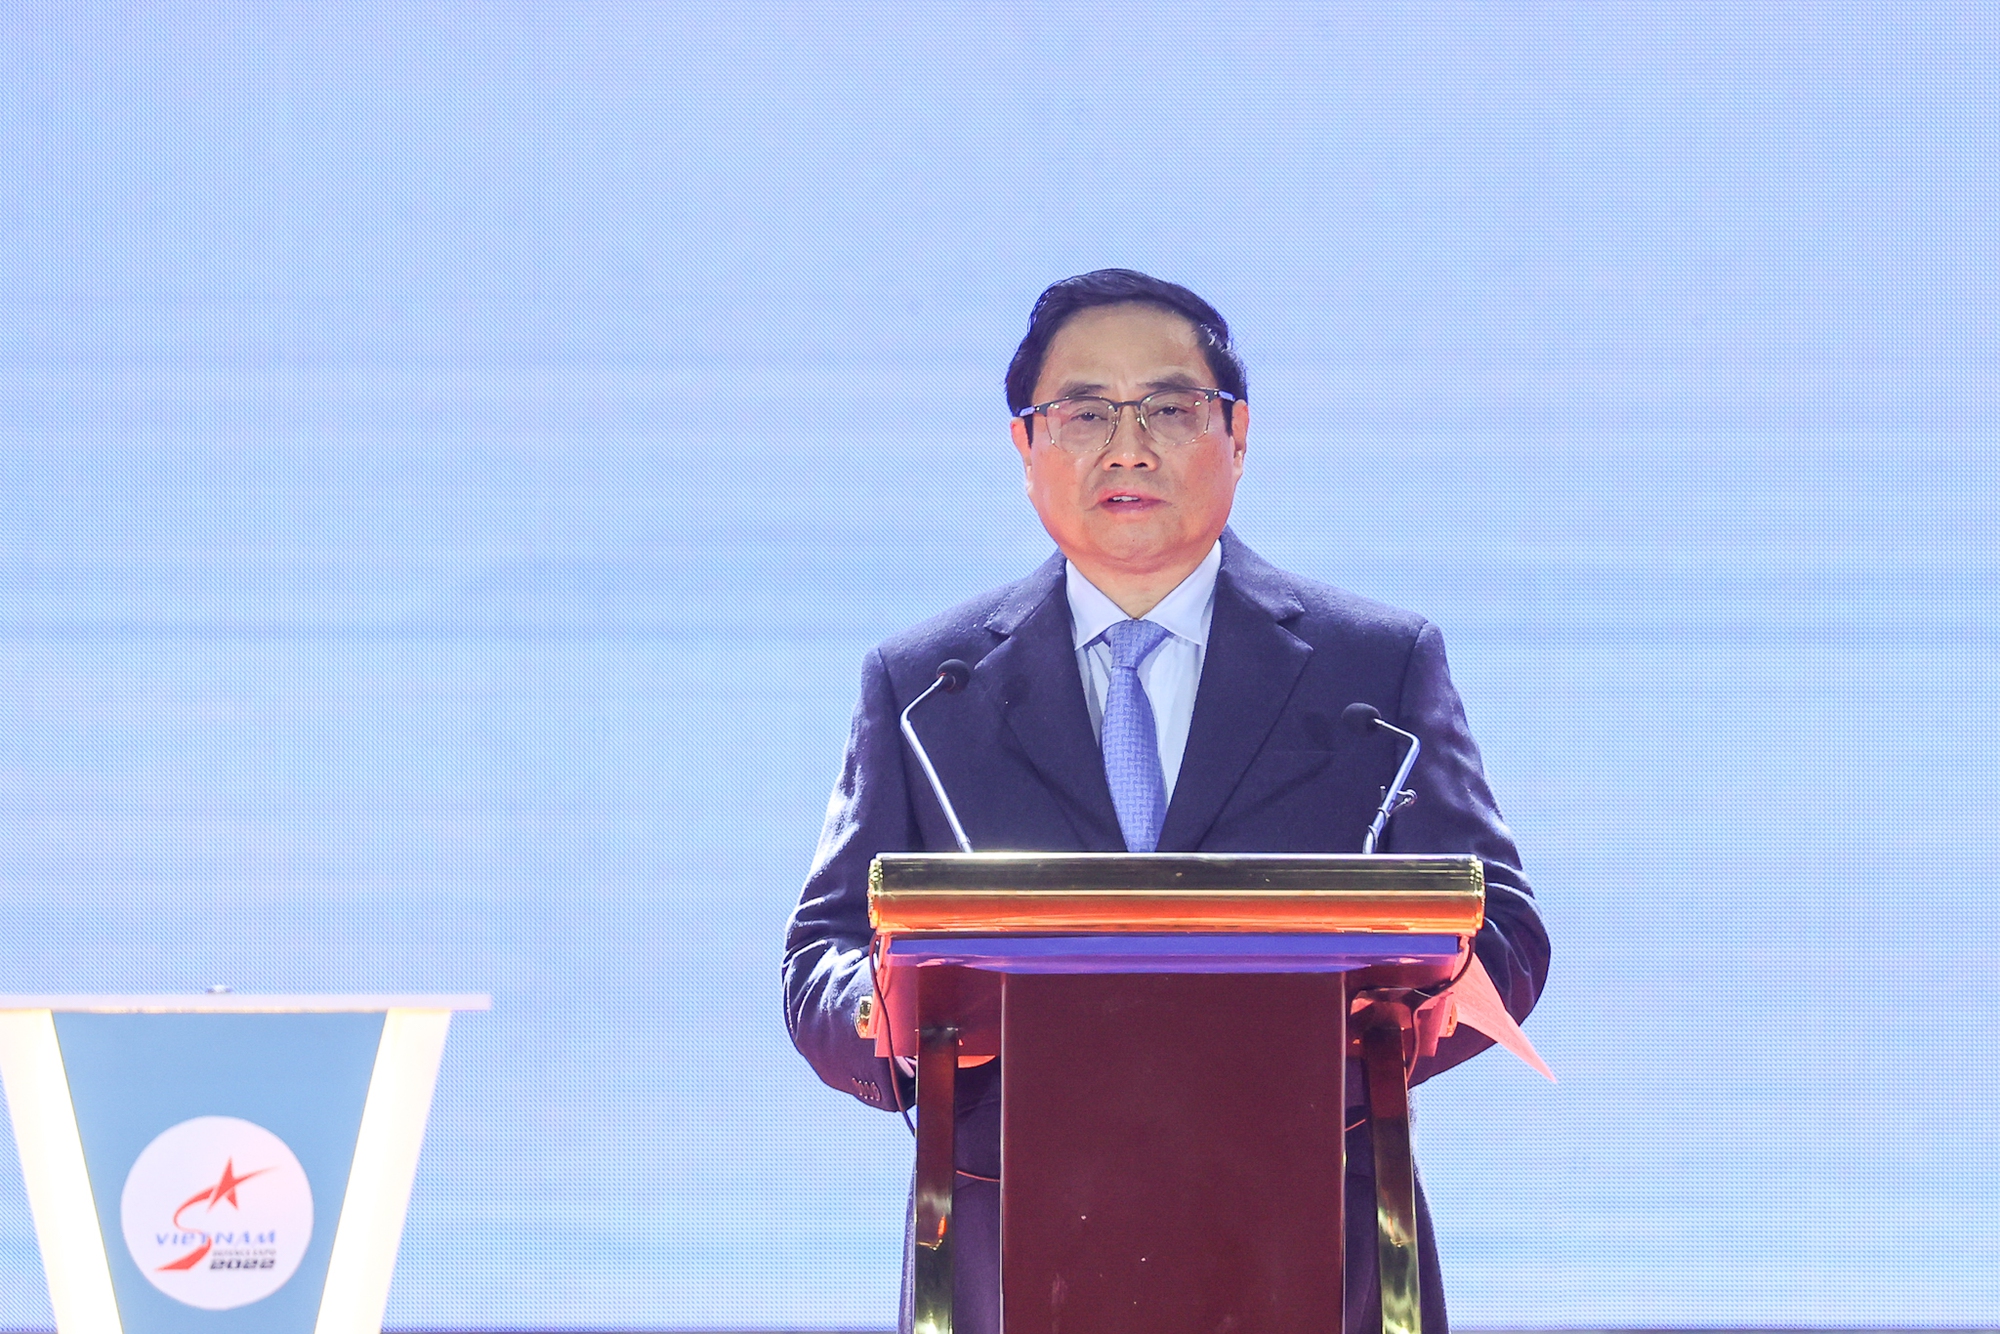 TOÀN VĂN: Phát biểu của Thủ tướng Phạm Minh Chính tại Triển lãm Quốc phòng quốc tế Việt Nam 2022 (Viet Nam Defence 2022) - Ảnh 1.